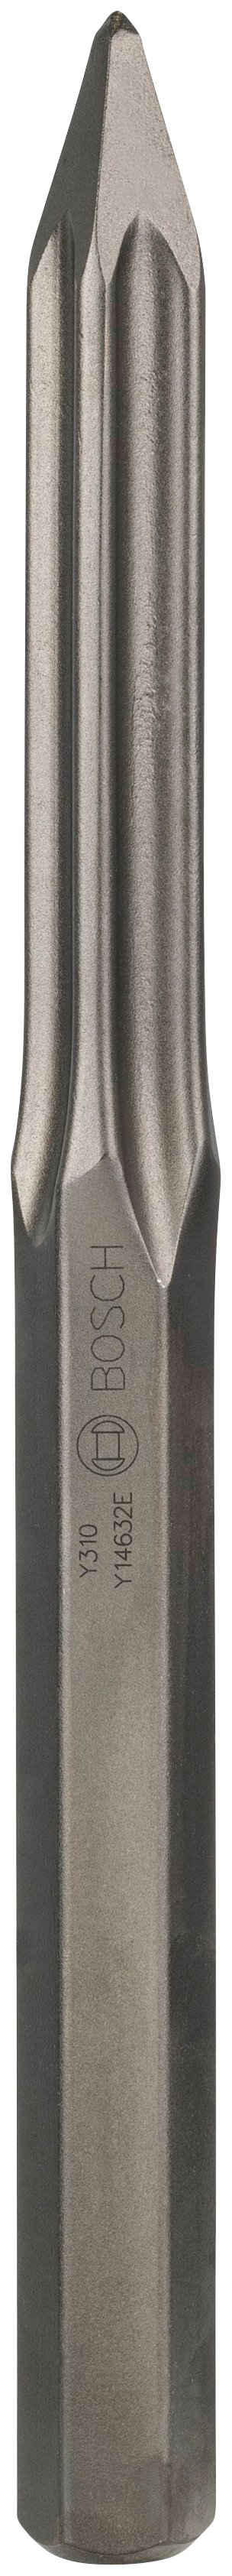 Bosch Professional Spitzmeißel, 40 in mm, 28-mm-Sechskantaufnahme 400 mm